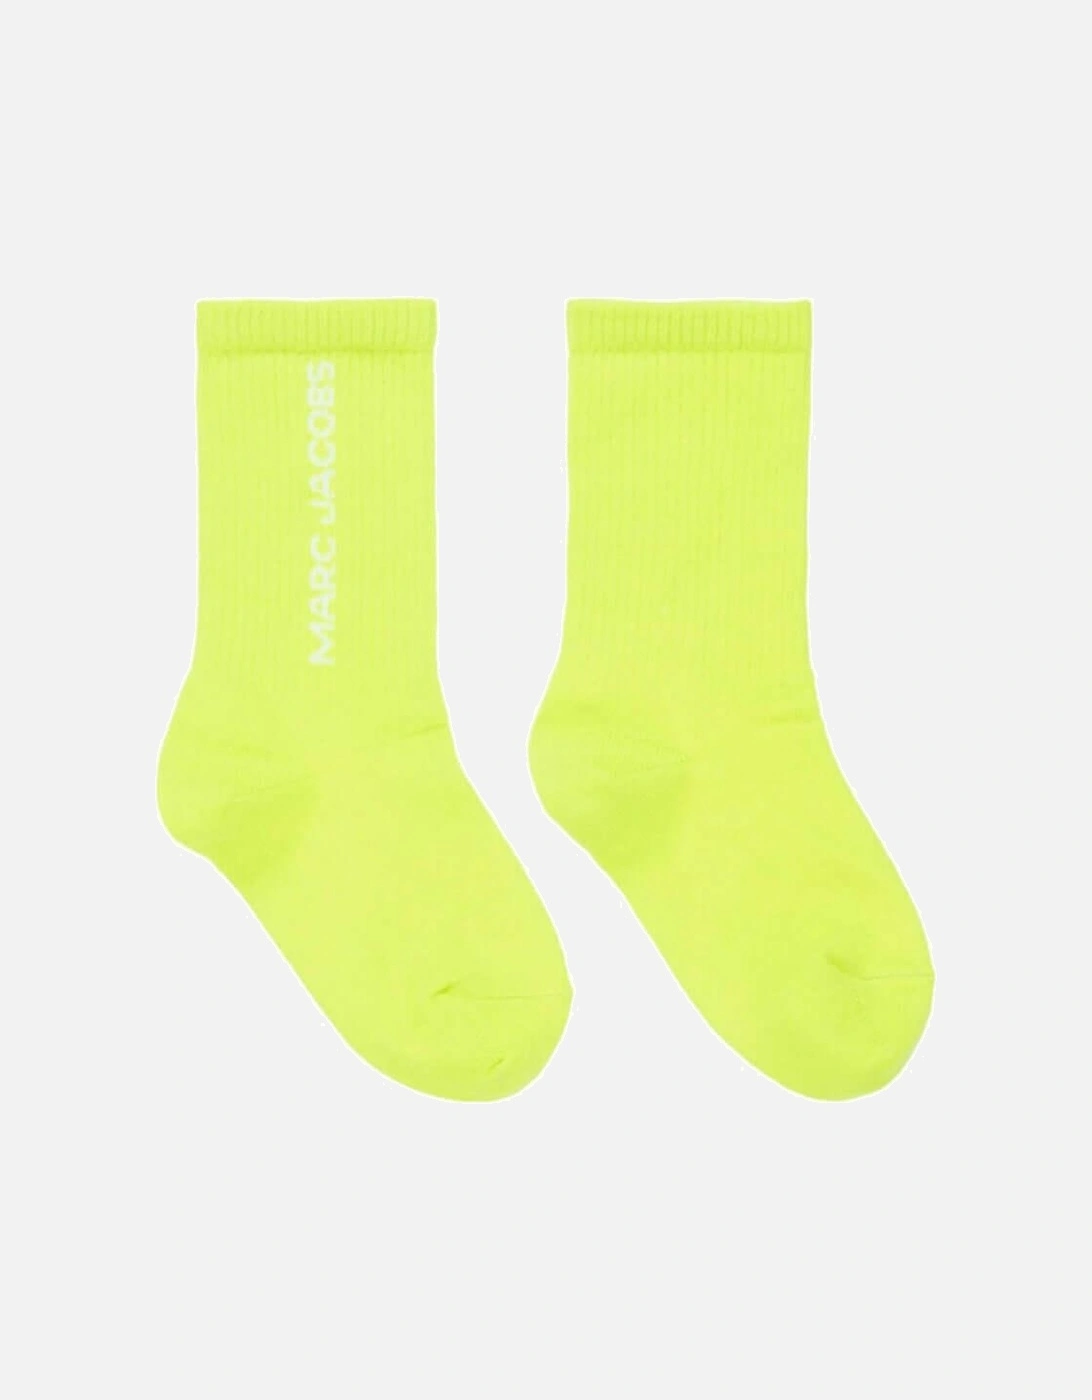 Boys Lime Socks, 2 of 1